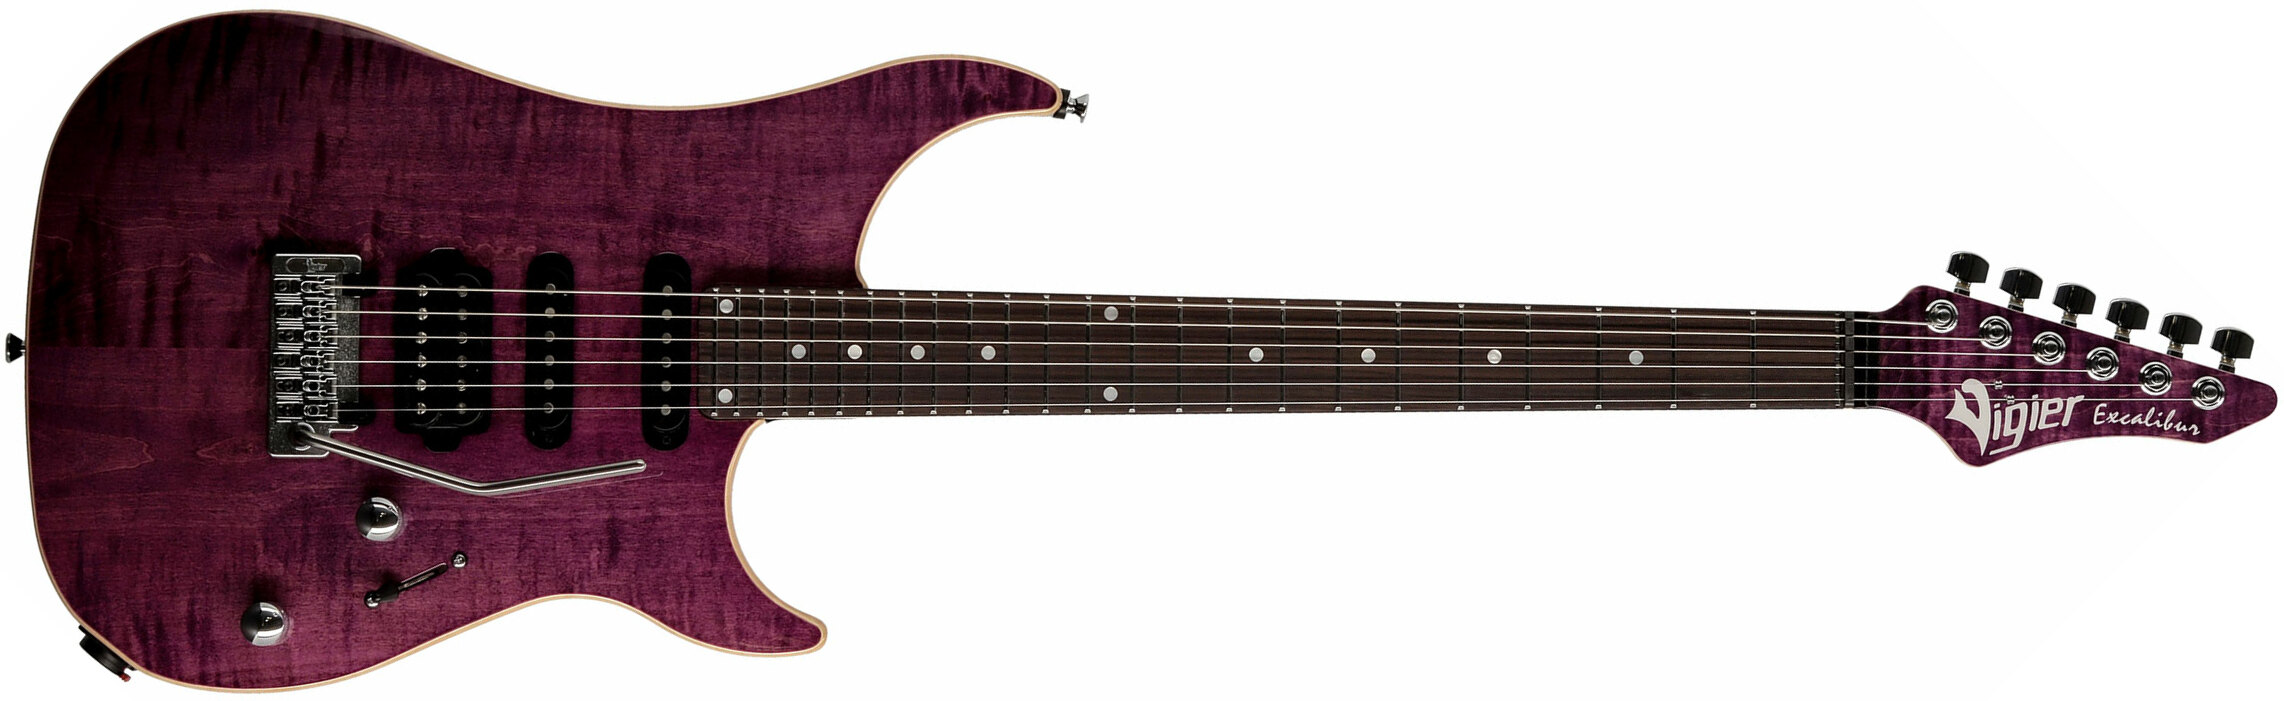 Vigier Excalibur Ultra Blues Hss Trem Rw - Amethyst Purple - Str shape electric guitar - Main picture